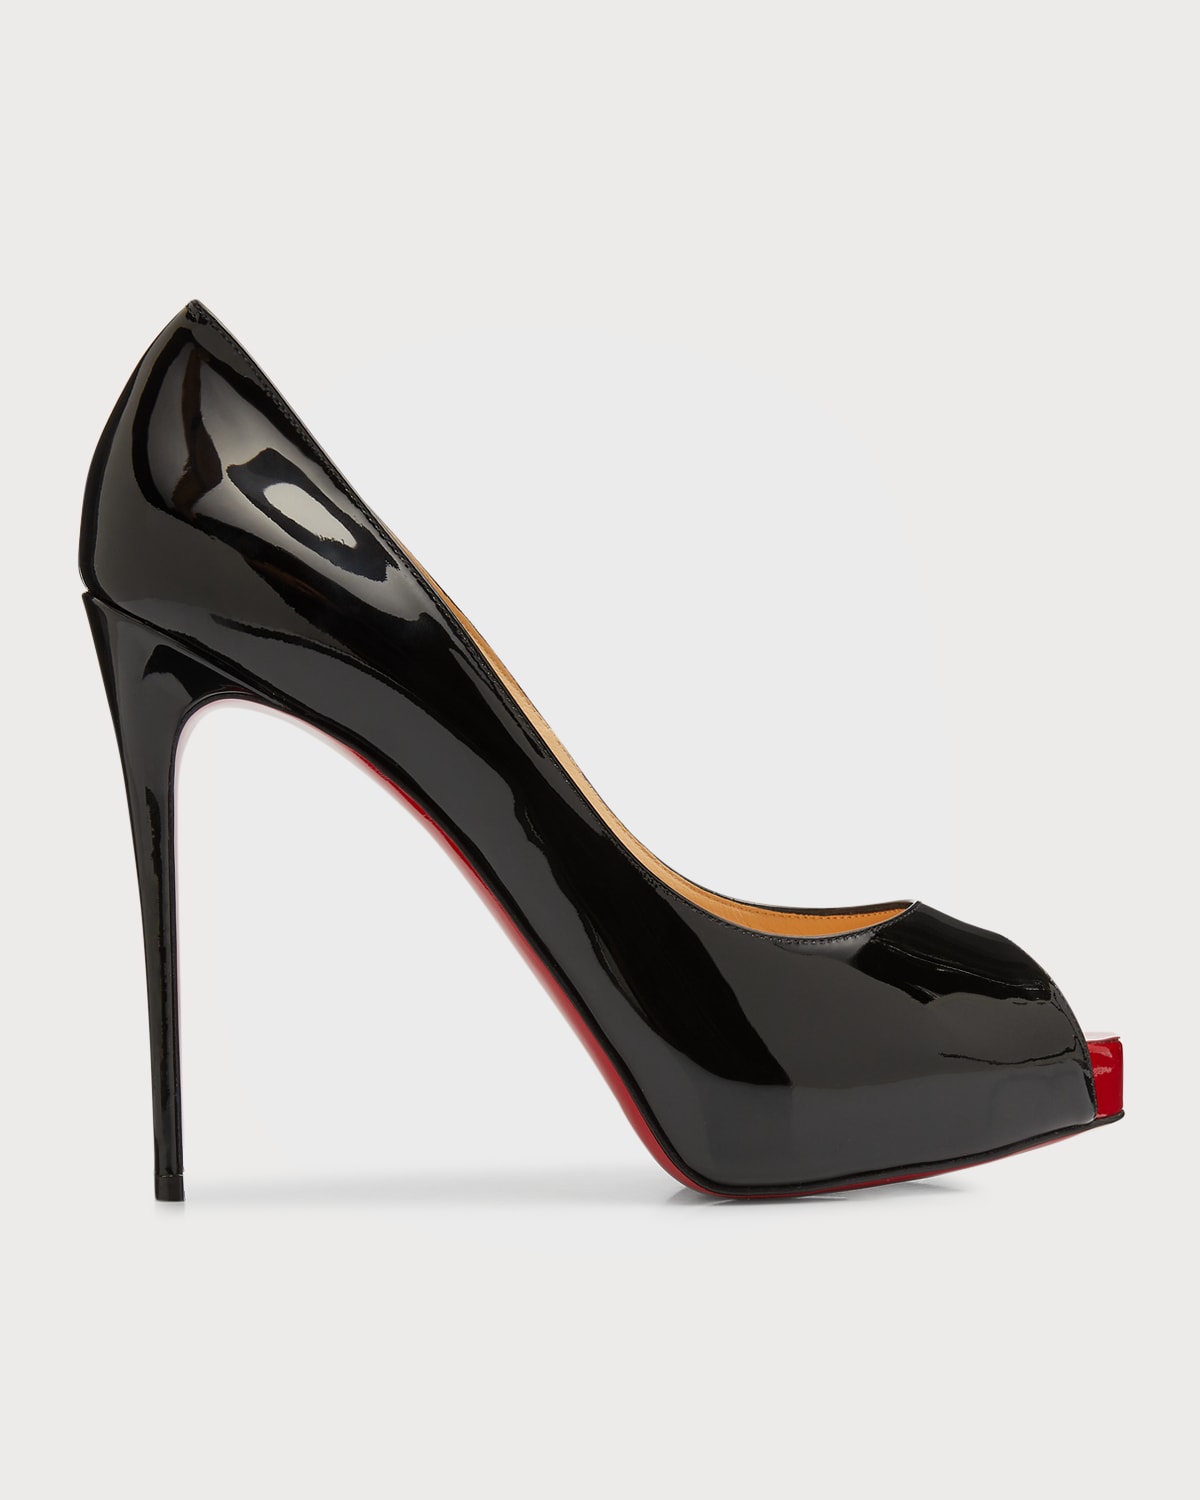 NEW NY LA High Heels Size 7 Shiny Black Leather Fringe Ankle Zip Platform Shoes 